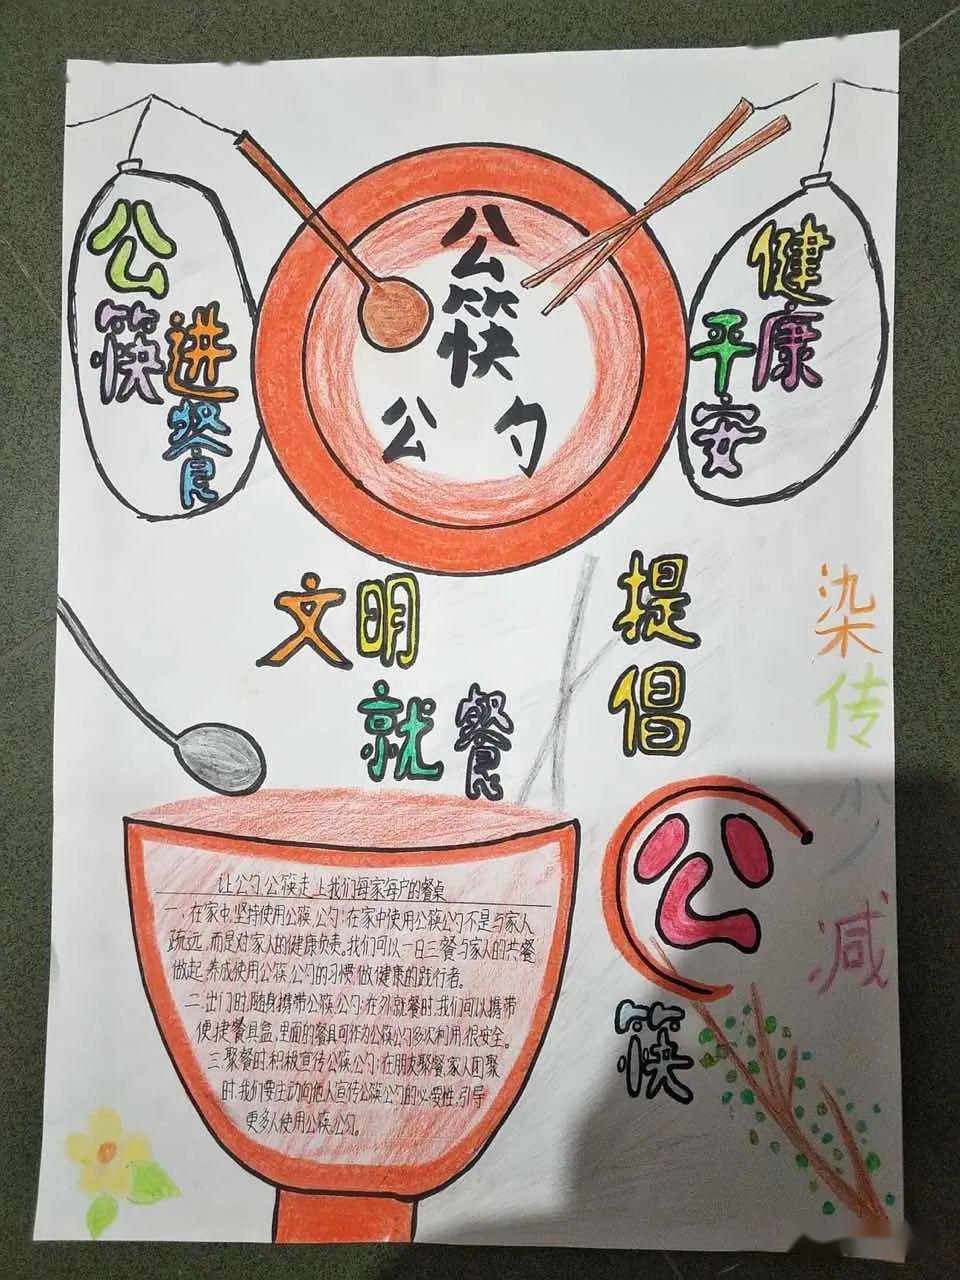 文明好习惯绘画视频倡议书嘉善娃娃们践行倡导使用公筷公勺之俞汇小学